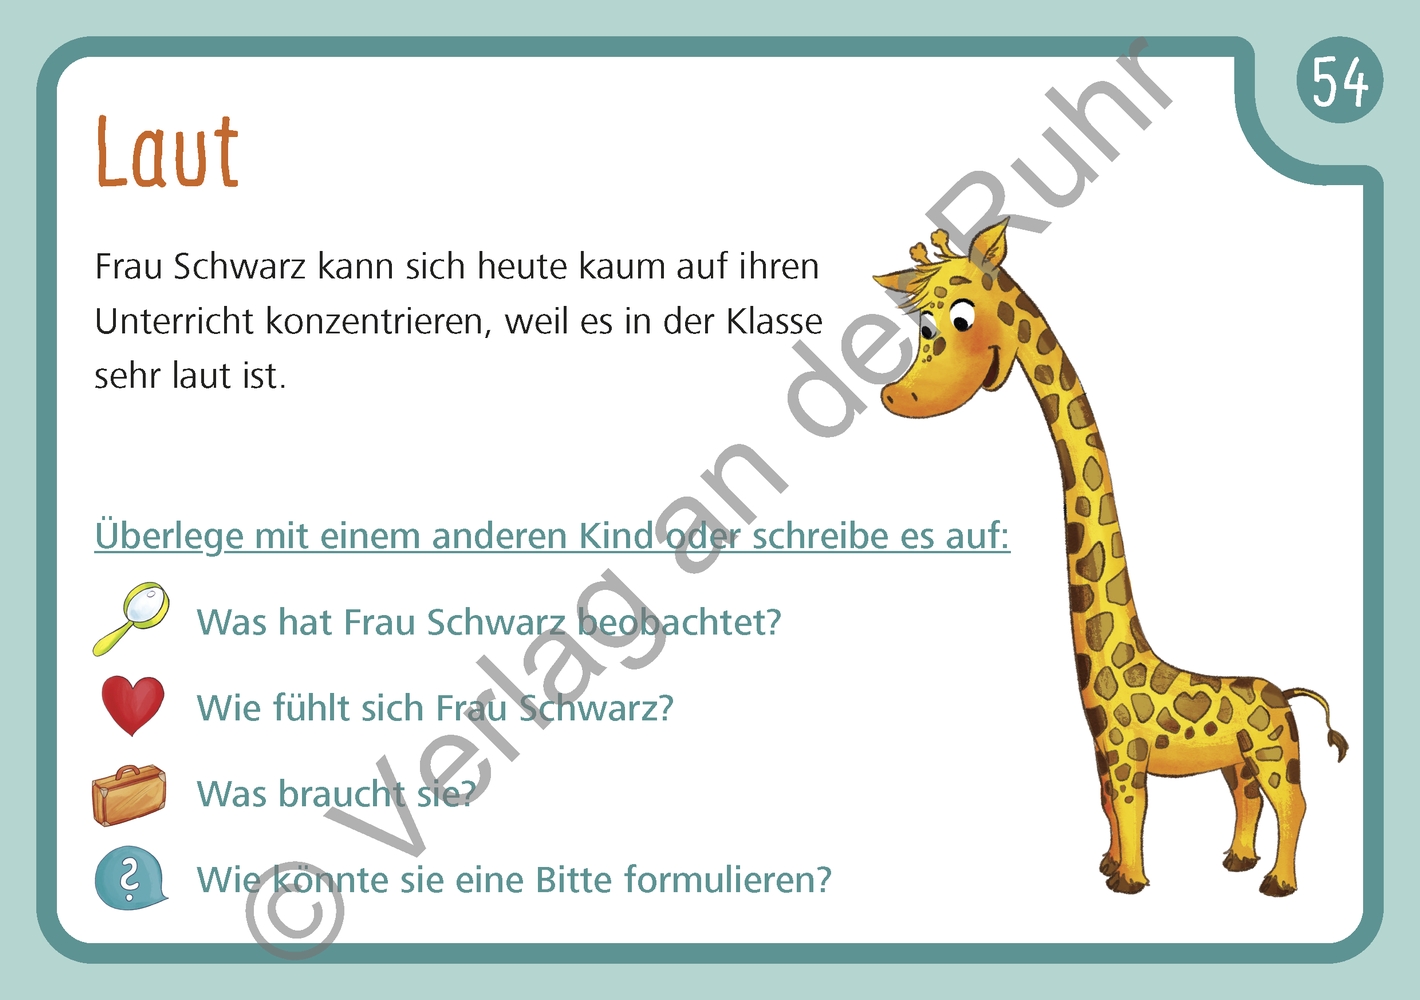 Unsere Giraffen-Kartei – Kinder üben selbstständig gewaltfreie Kommunikation mit der Giraffensprache